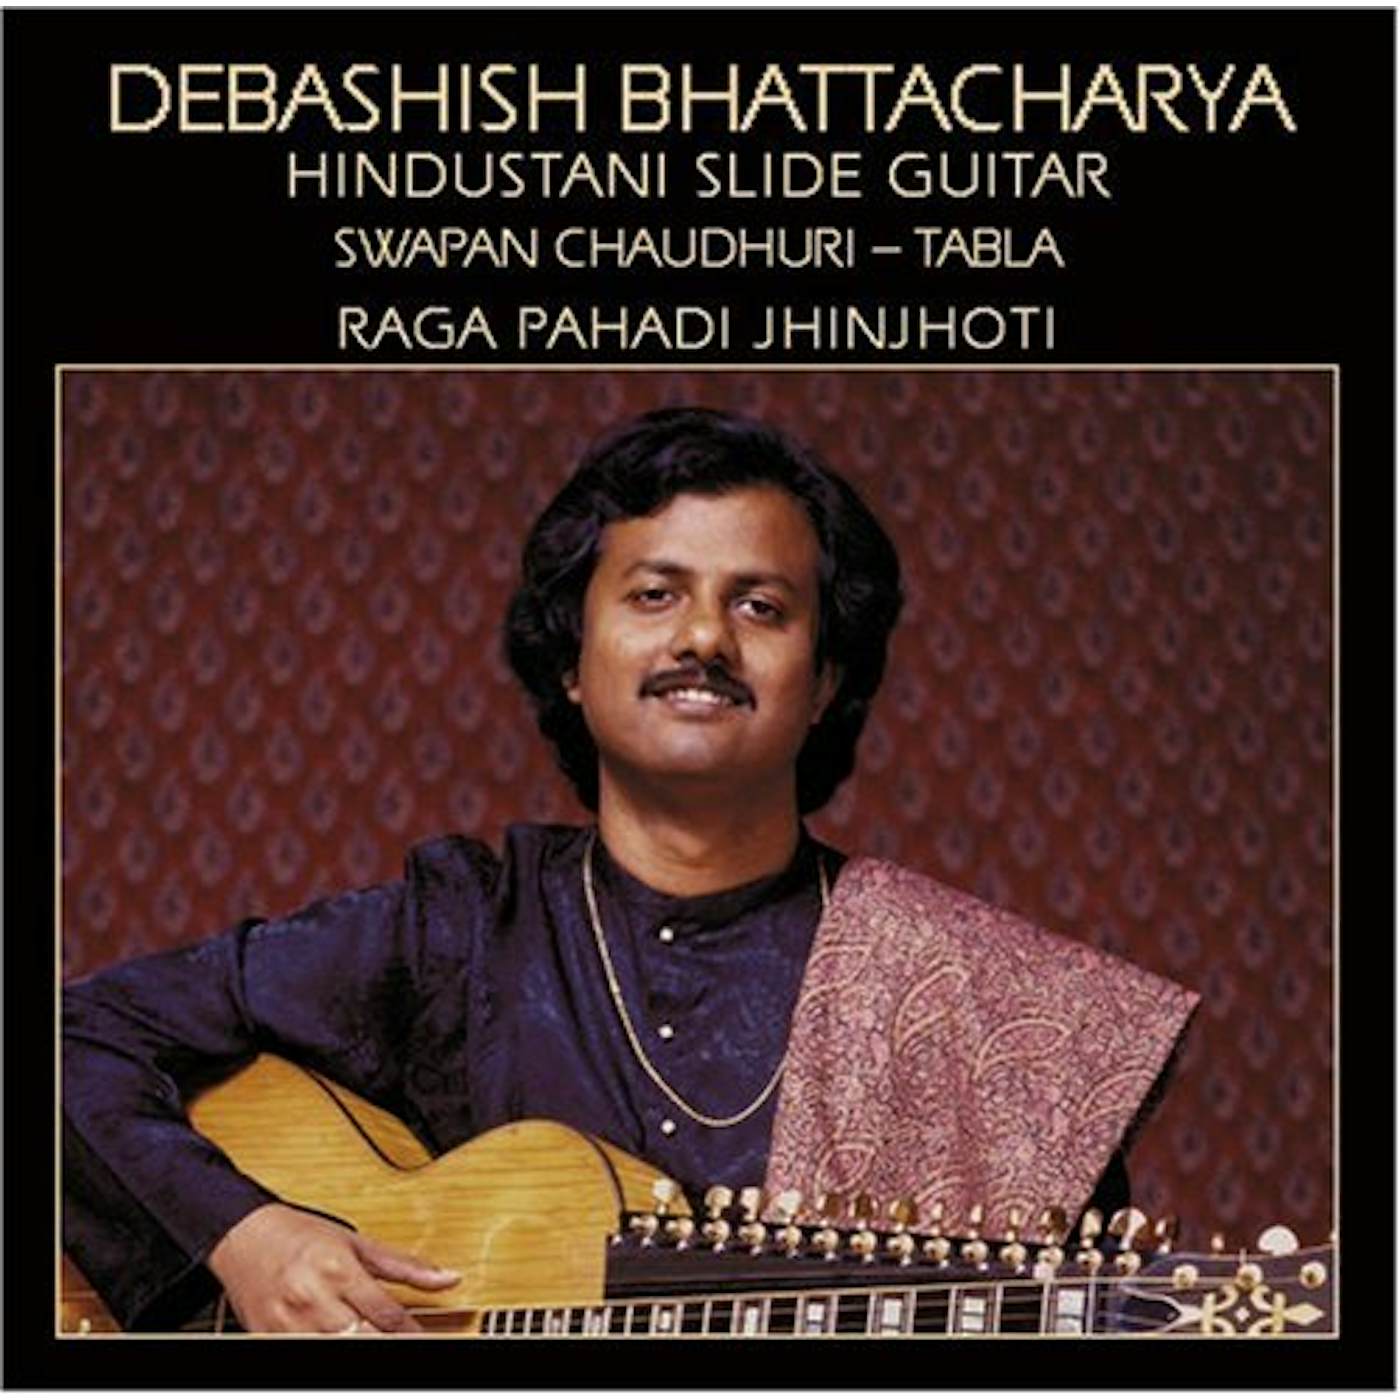 Debashish Bhattacharya RAGA PAHADI JHINJHOTI CD